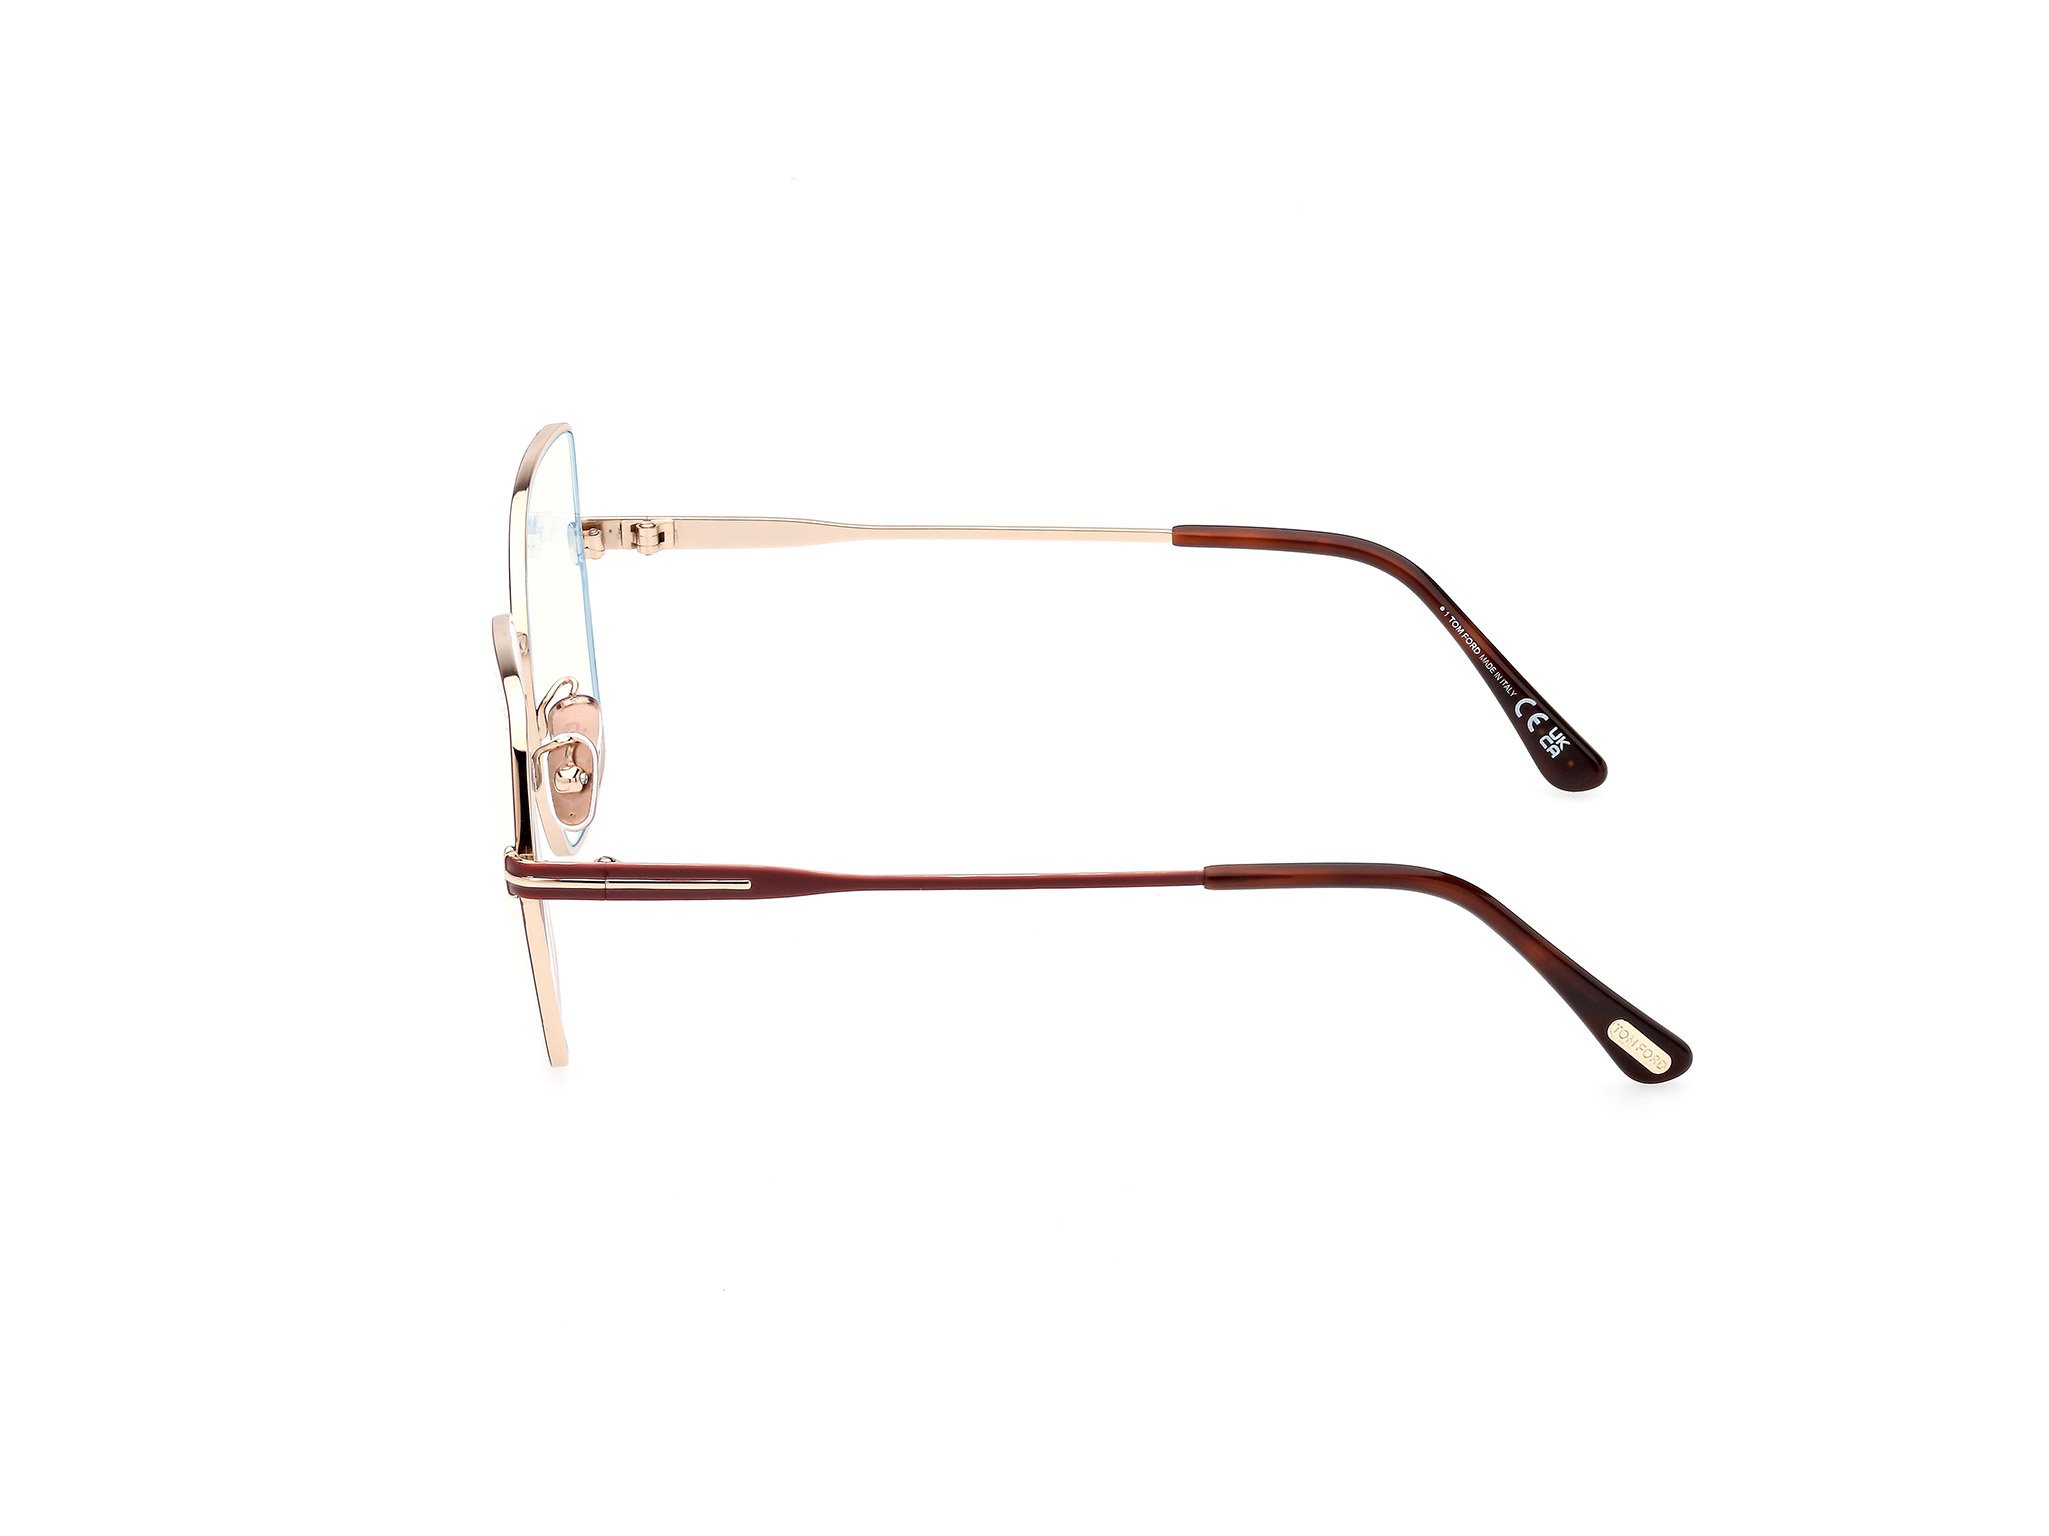 Das Bild zeigt die Korrektionsbrille FT5876-B 028 von der Marke Tom Ford in rose gold.